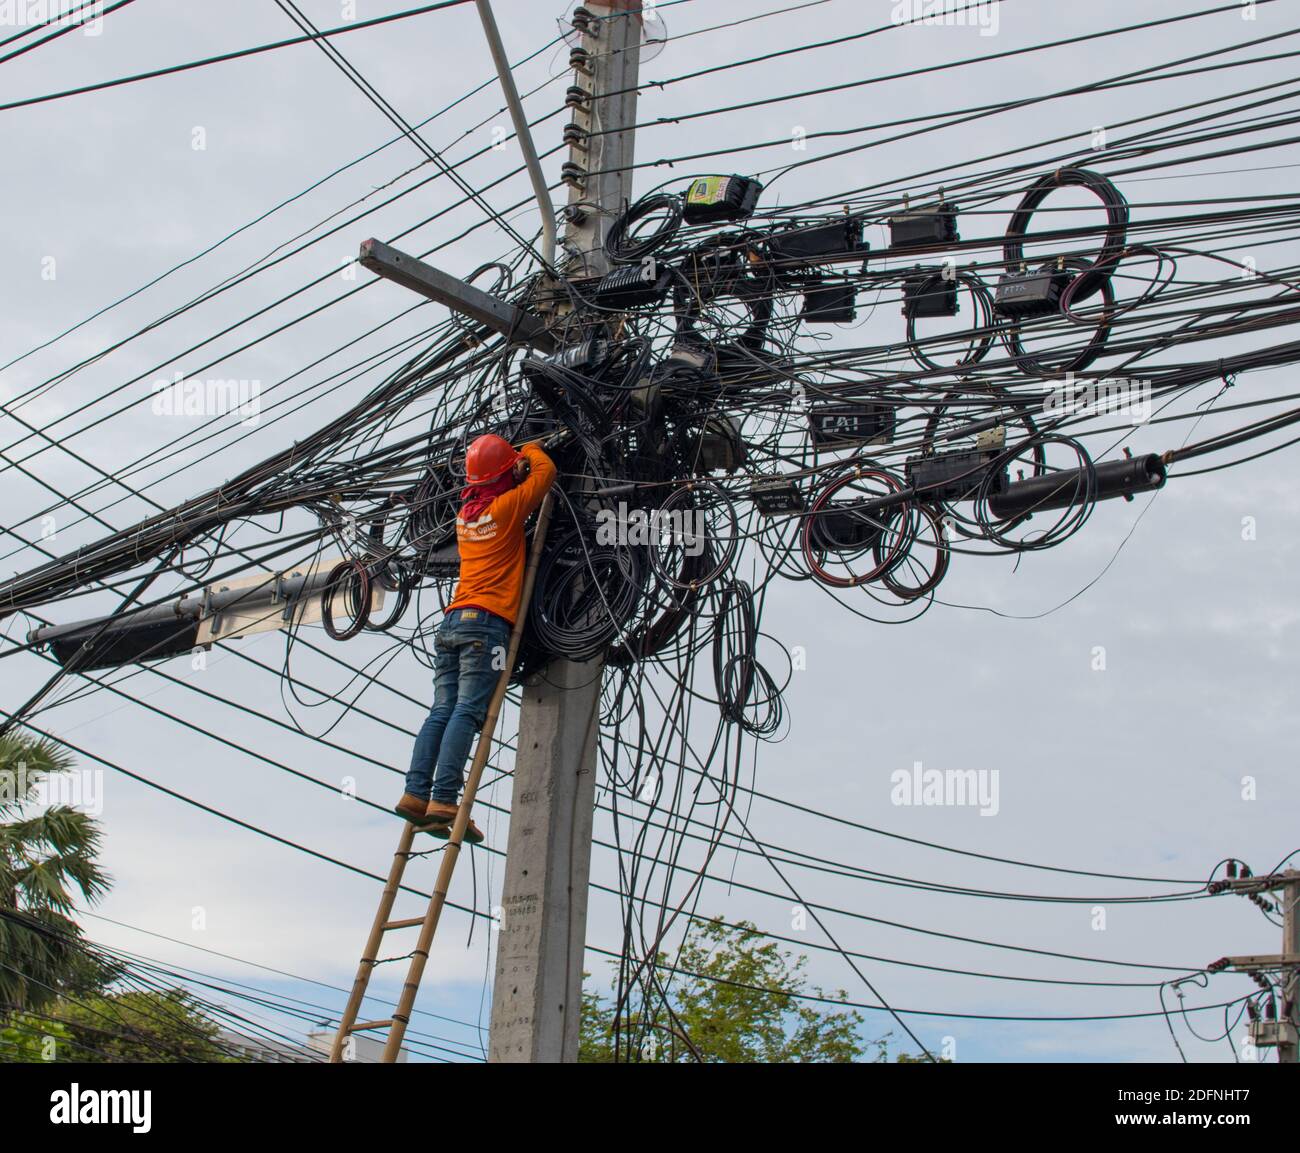 Un électricien thaïlandais à son emploi quotidien dans le quartier de Pattaya Chonburi Thaïlande Asie Banque D'Images